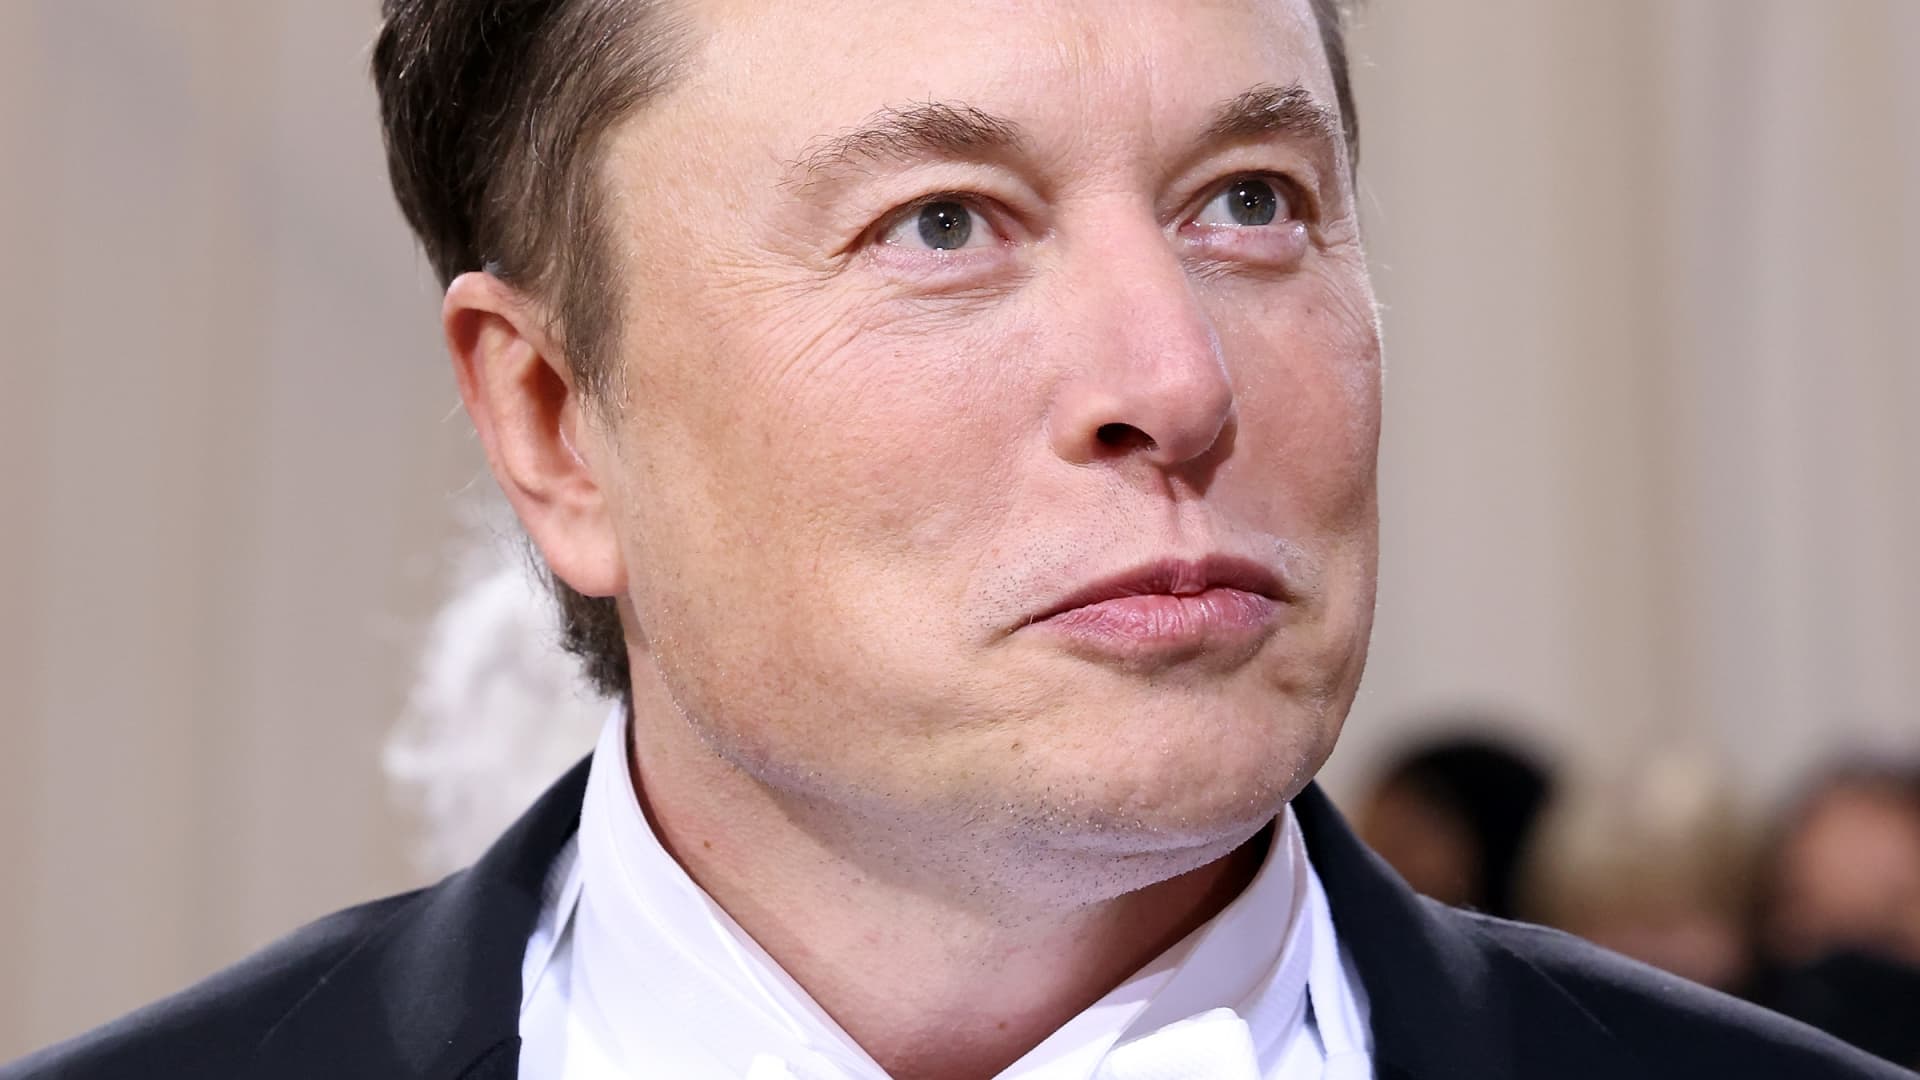 Activist investor neighborhood asks SEC to investigate Tesla over notion to shrink board